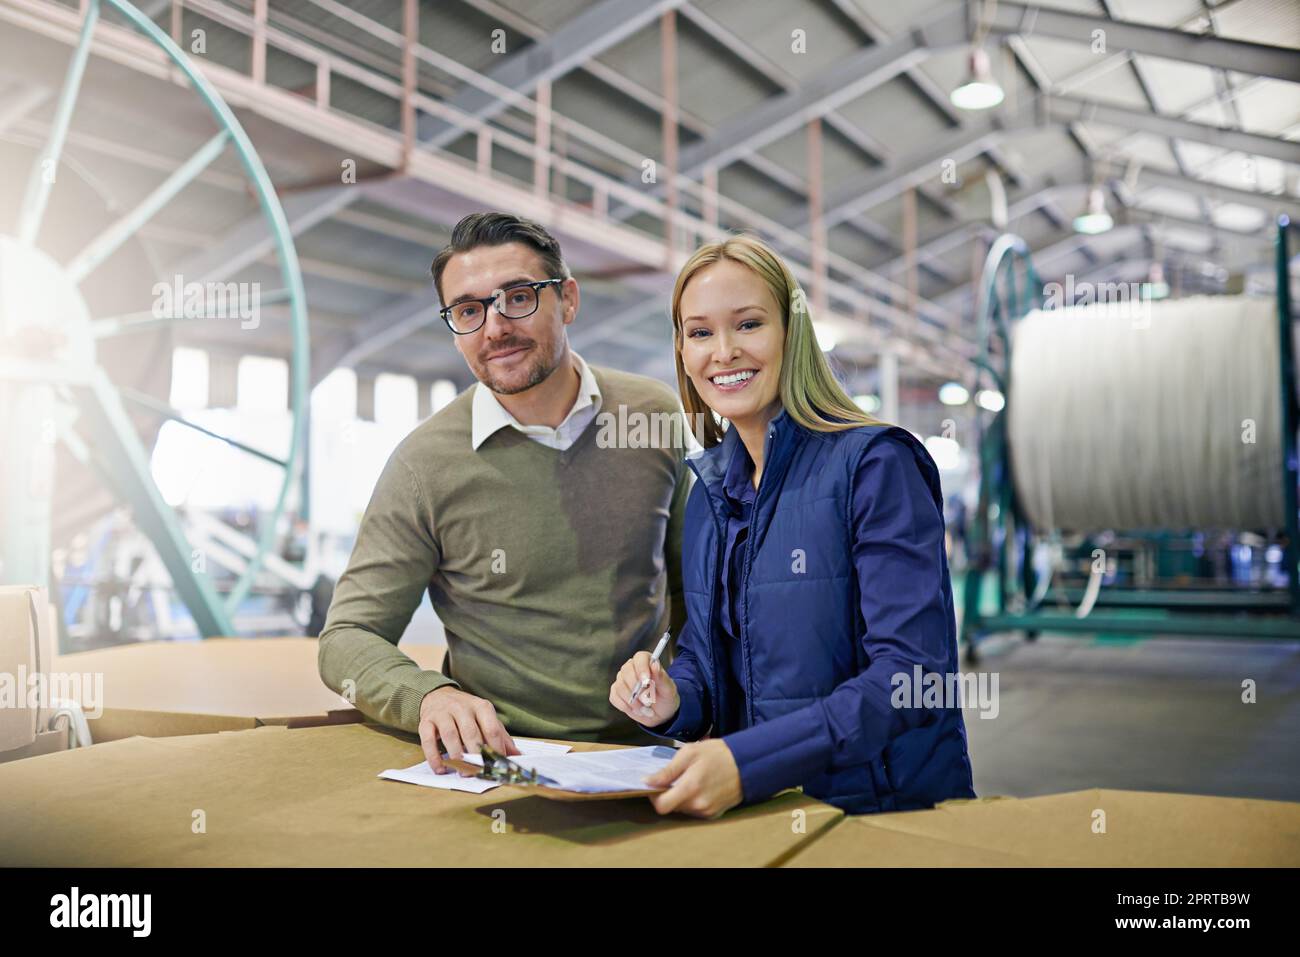 Gestione delle operazioni in magazzino. Ritratto di due manager che leggono documenti mentre si trovano in fabbrica. Foto Stock